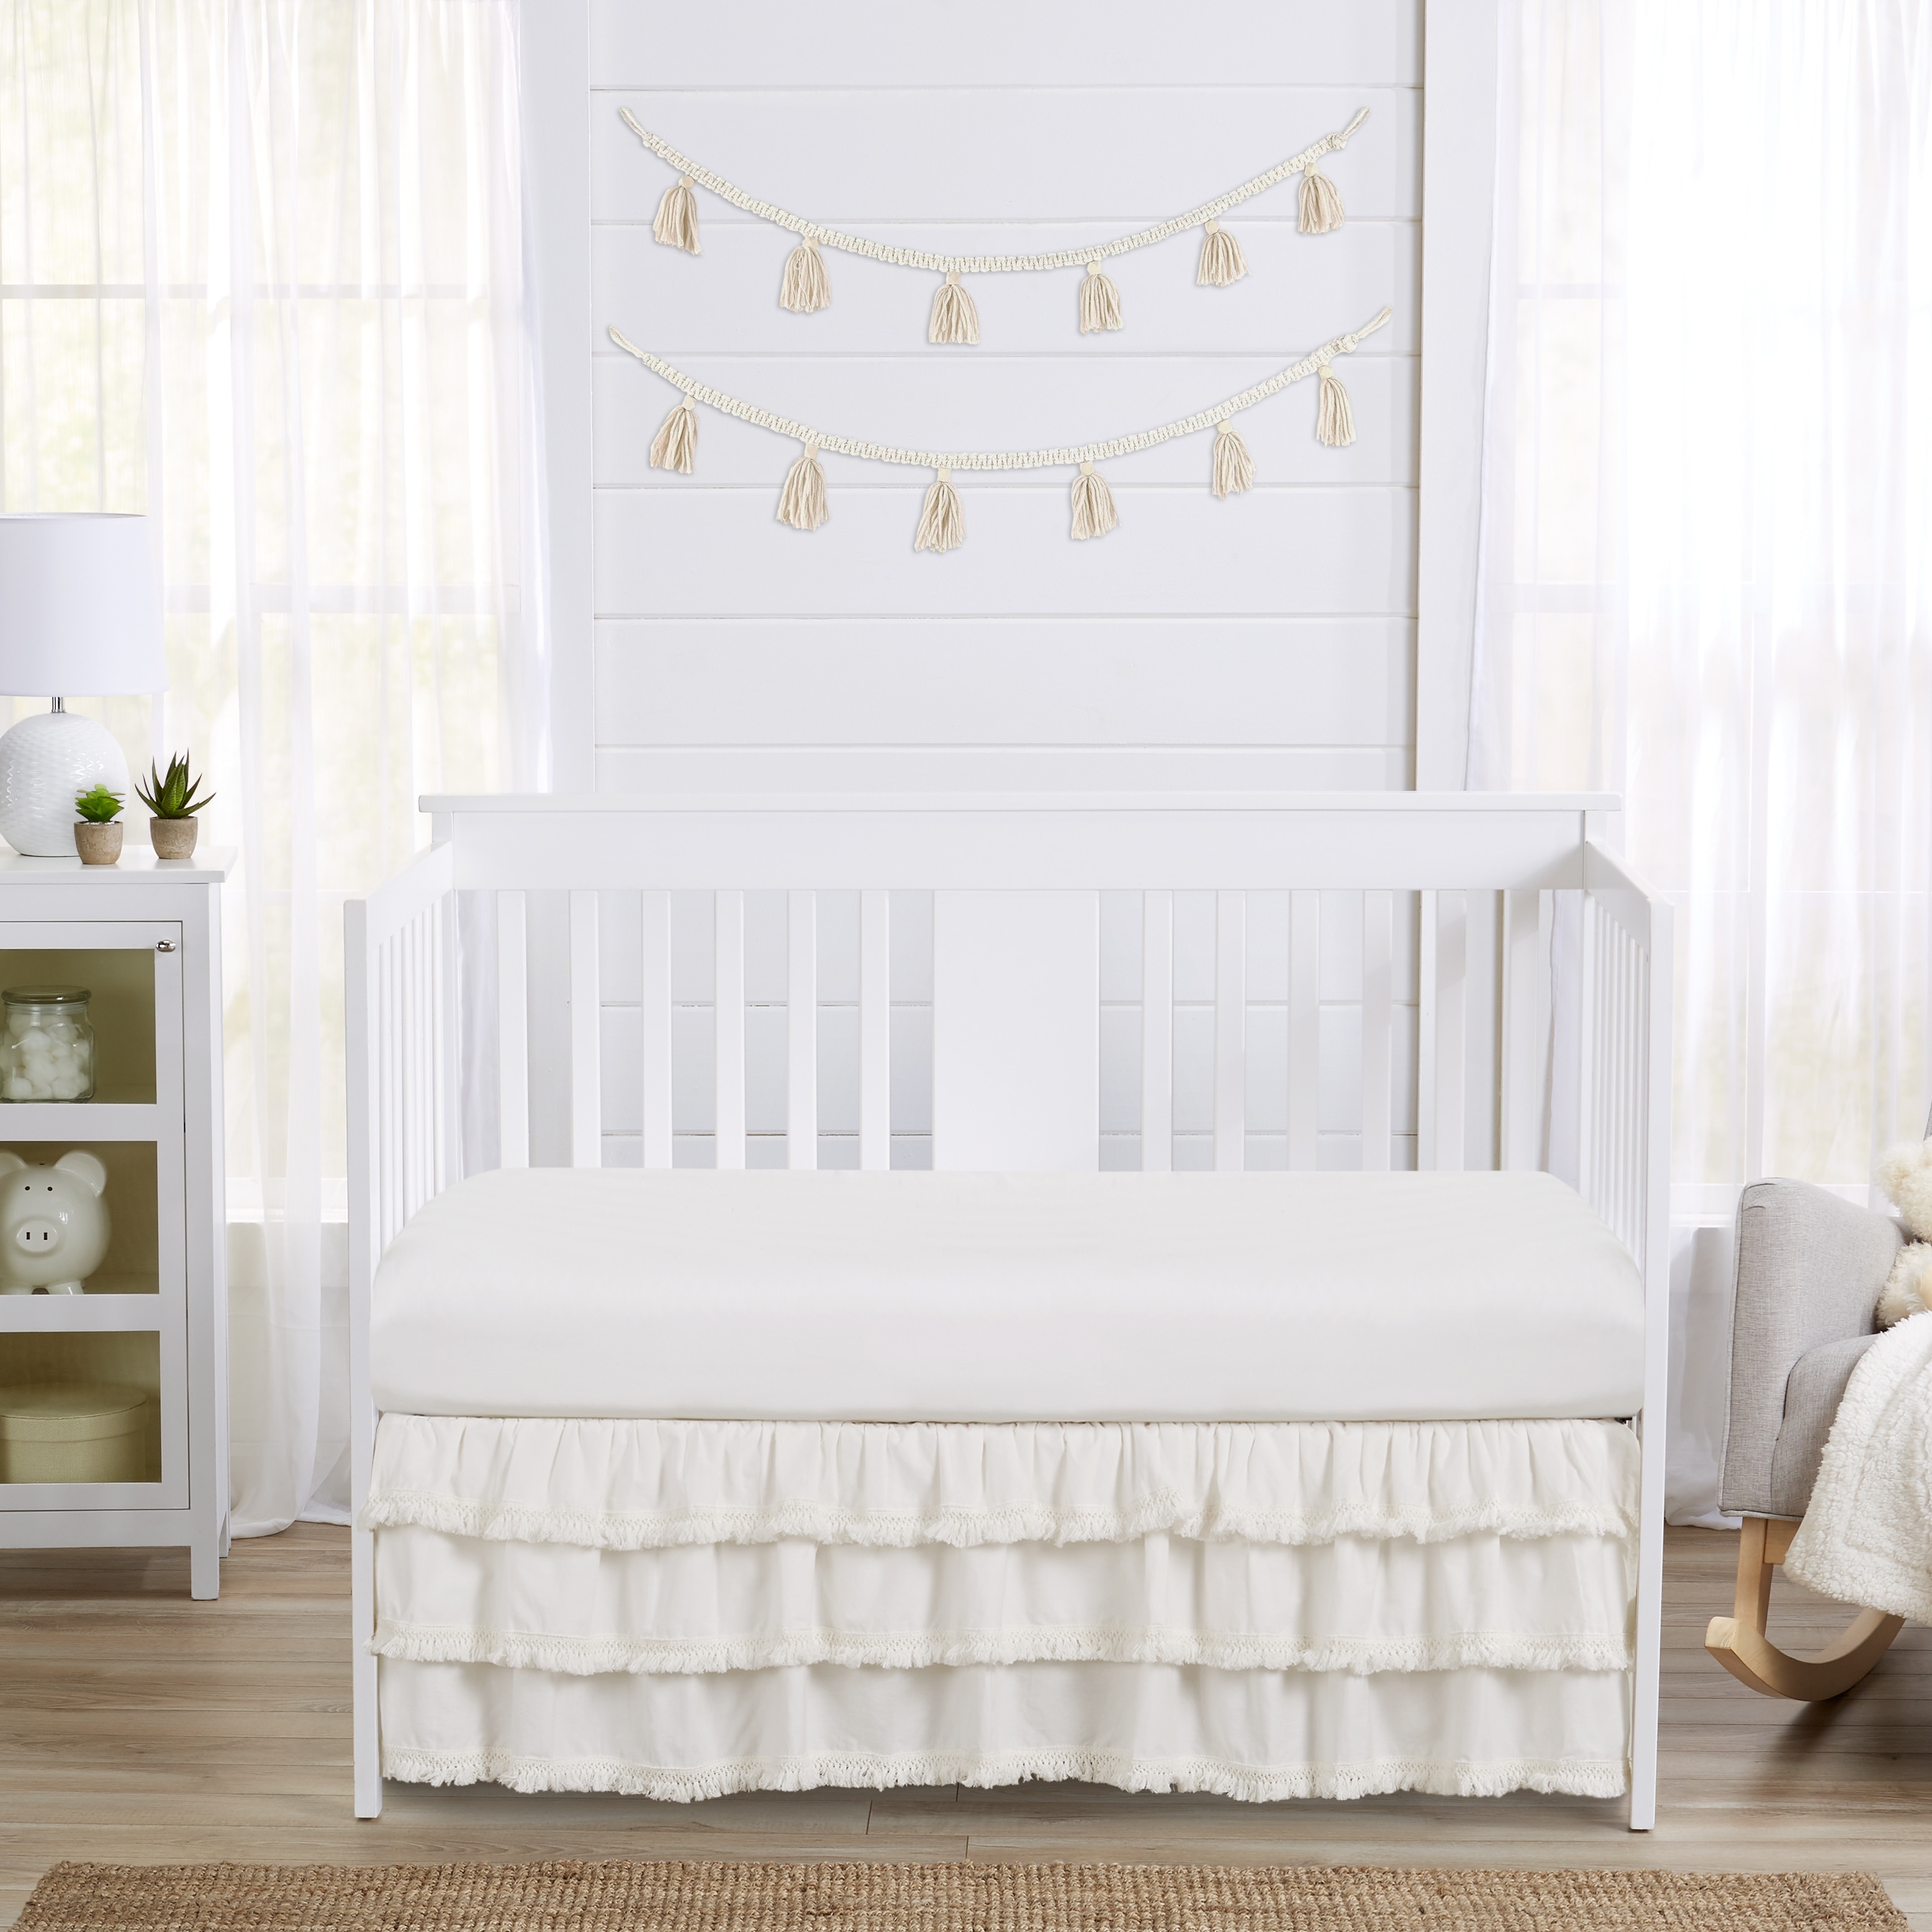 3 Tiered Ruffled Crib Skirt Baby Girl Nursery Bedding Dust Ruffle 3 Tiered White 